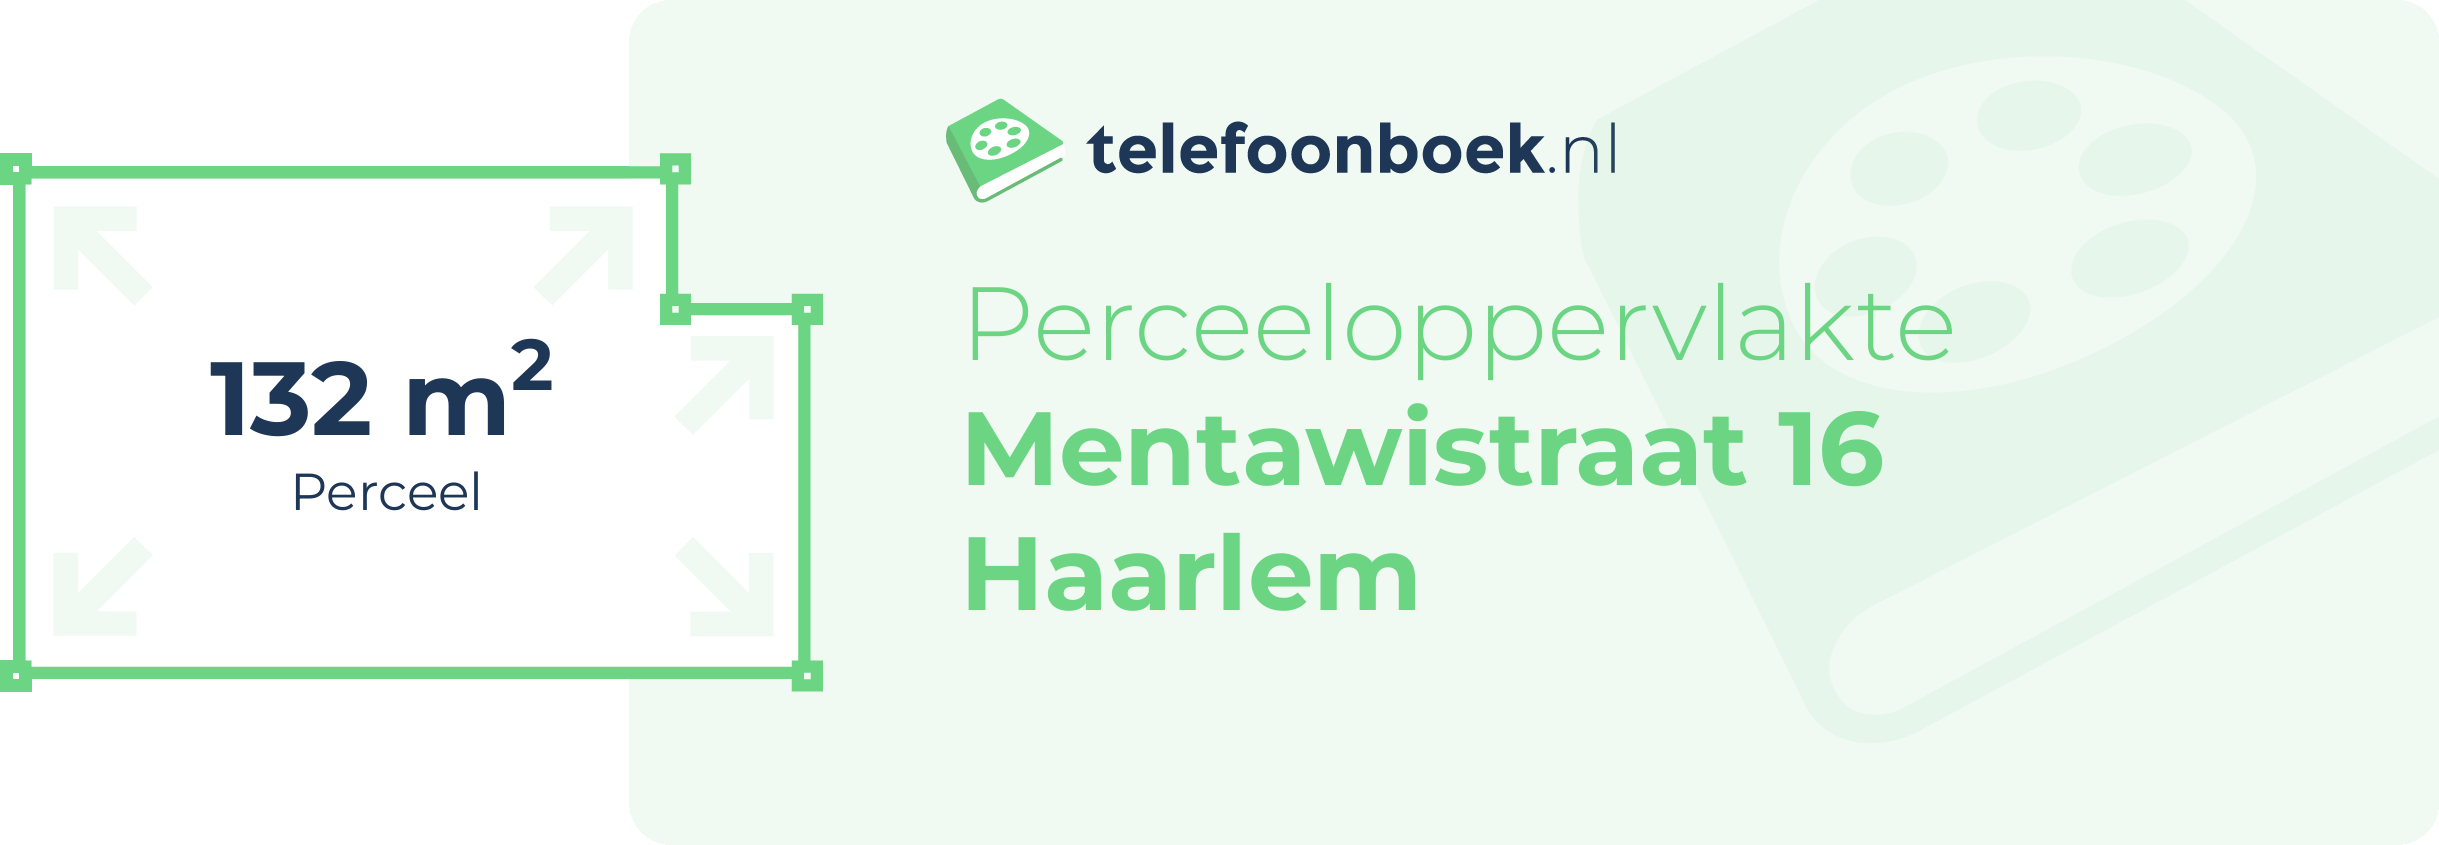 Perceeloppervlakte Mentawistraat 16 Haarlem